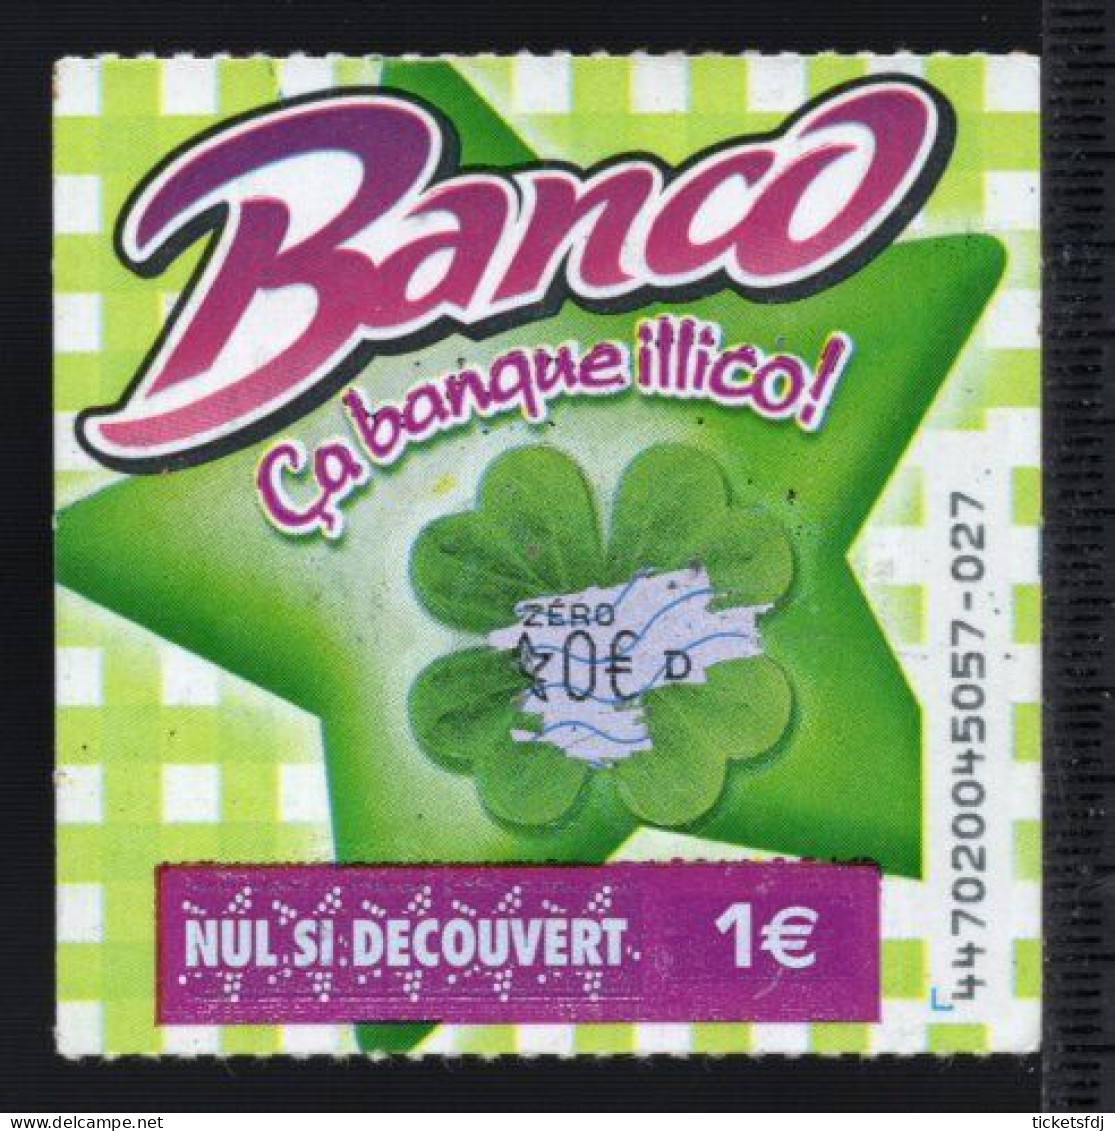 grattage FDJ - tickets BANCO au choix (39101-44701-44702-44703) FRANCAISE DES JEUX